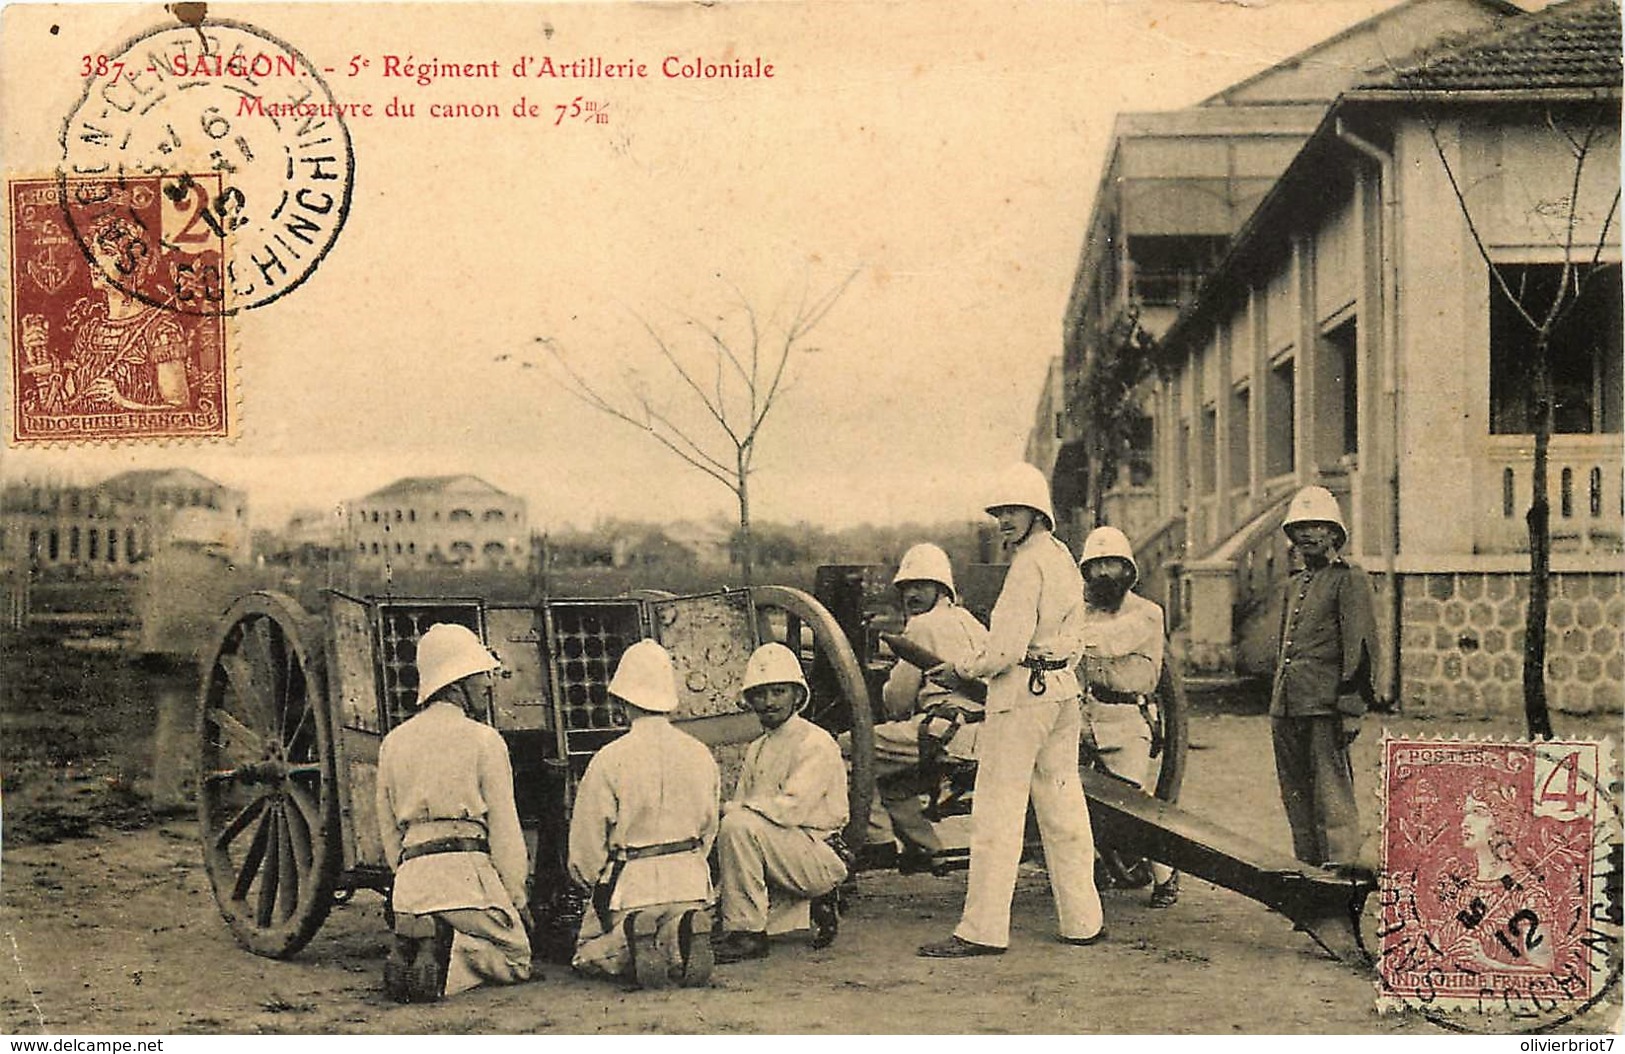 Tonkin - Cochinchine - Viet-Nâm - Saigon - 5e Régiment D'Artillerie Coloniale - Manoeuvre Du Canon De 75 - Viêt-Nam